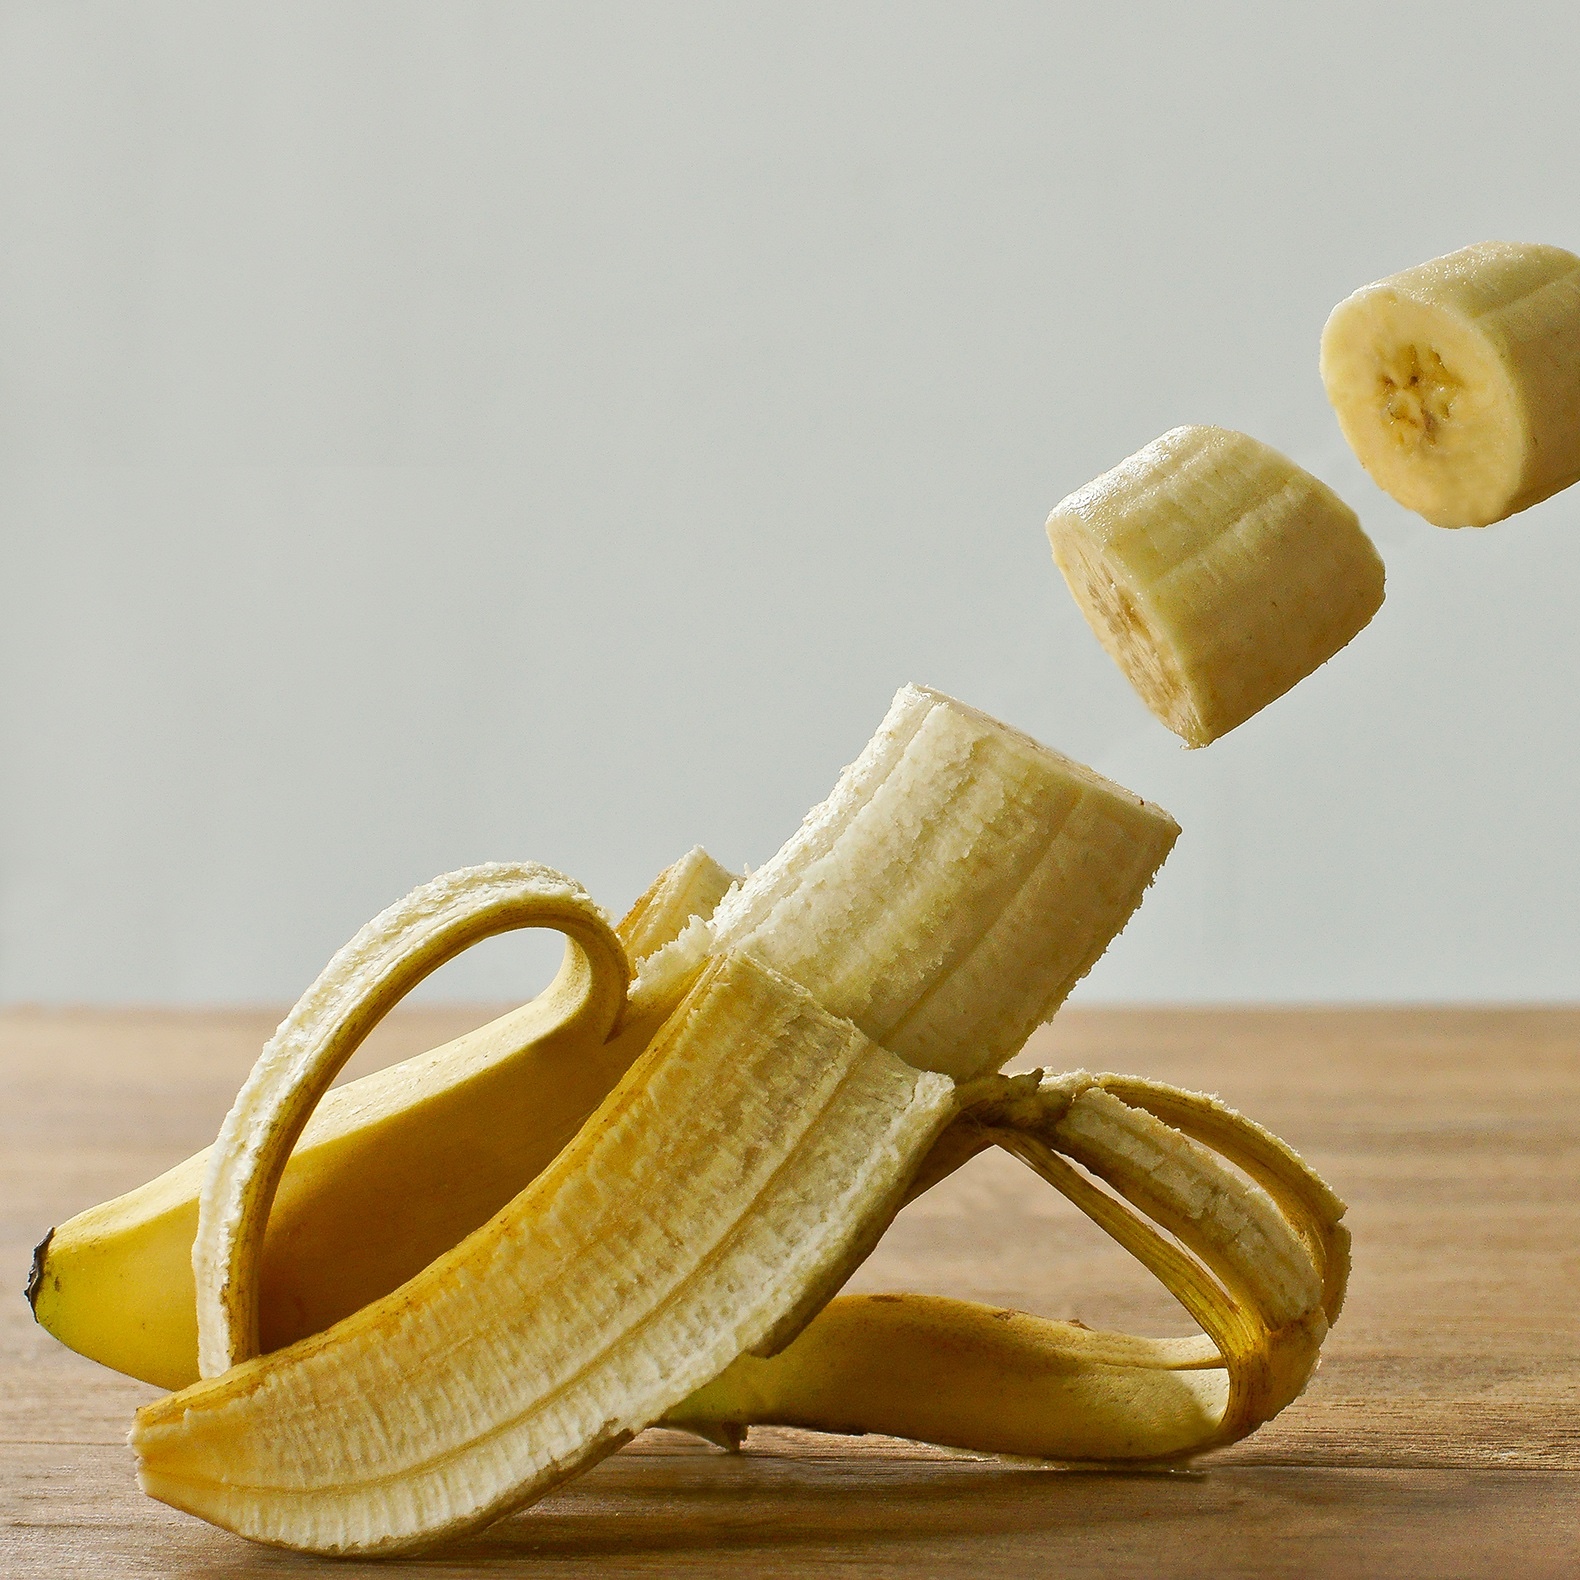 Foto: Teilweise geschälte und geschnittene Banane